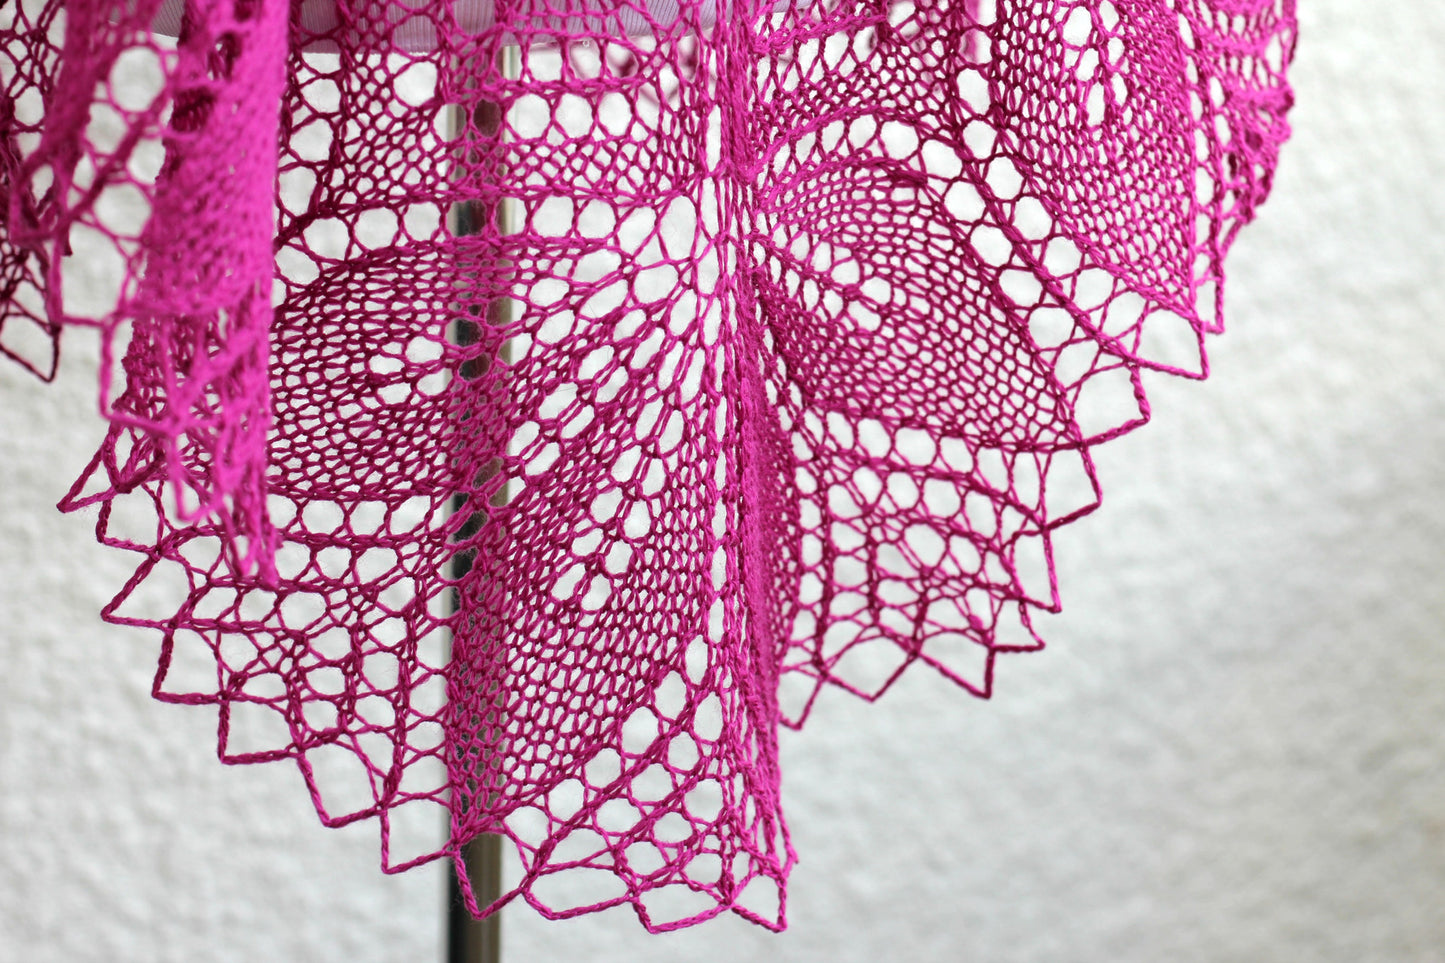 Lace shawl in fuchsia color